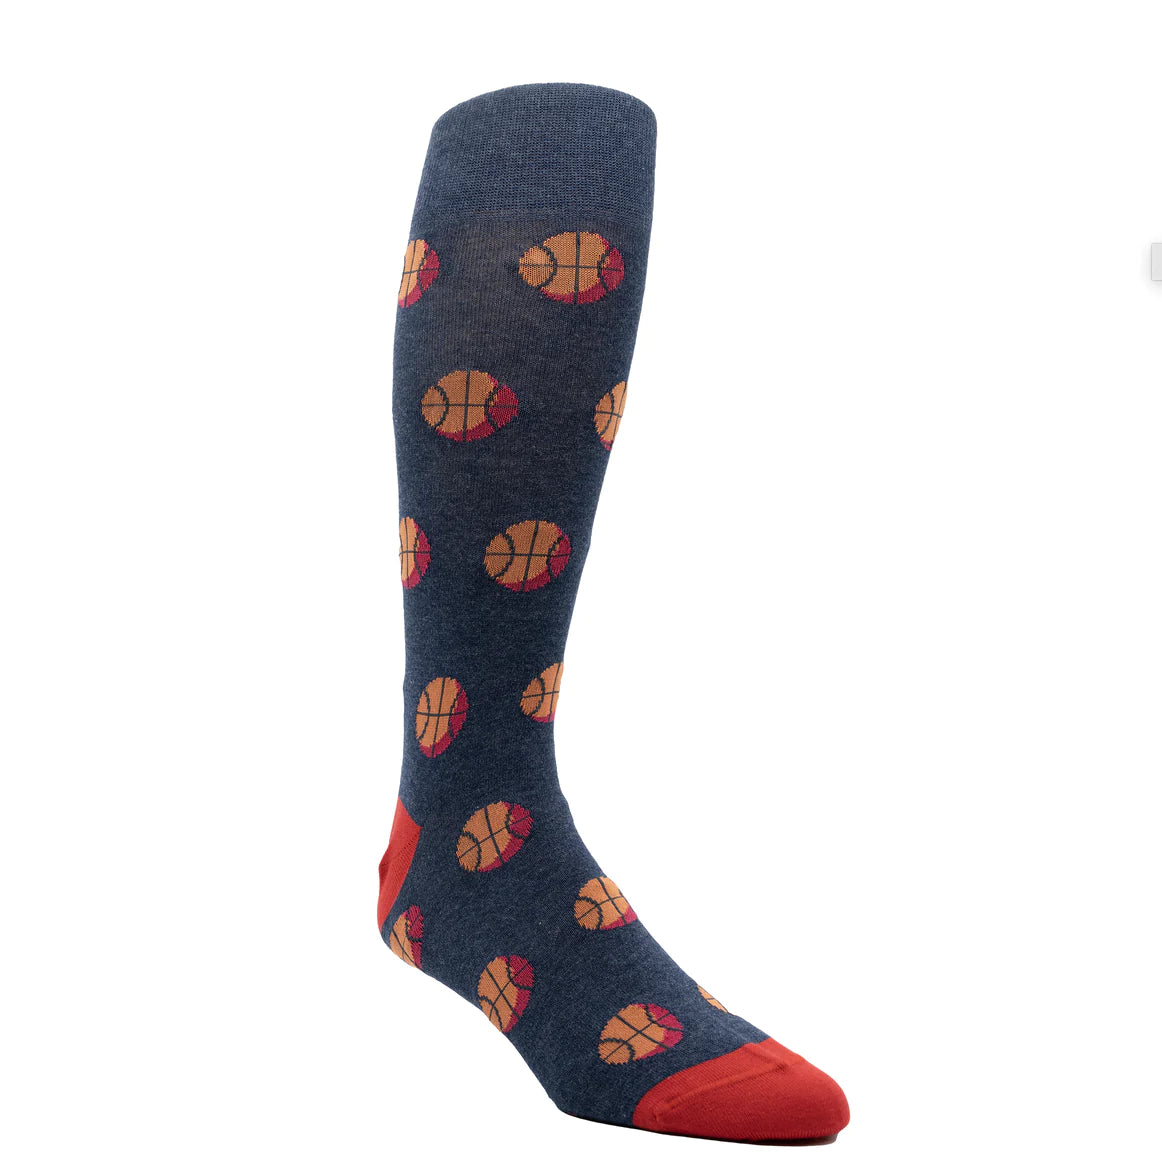 Men's Socks - Ell & Atty